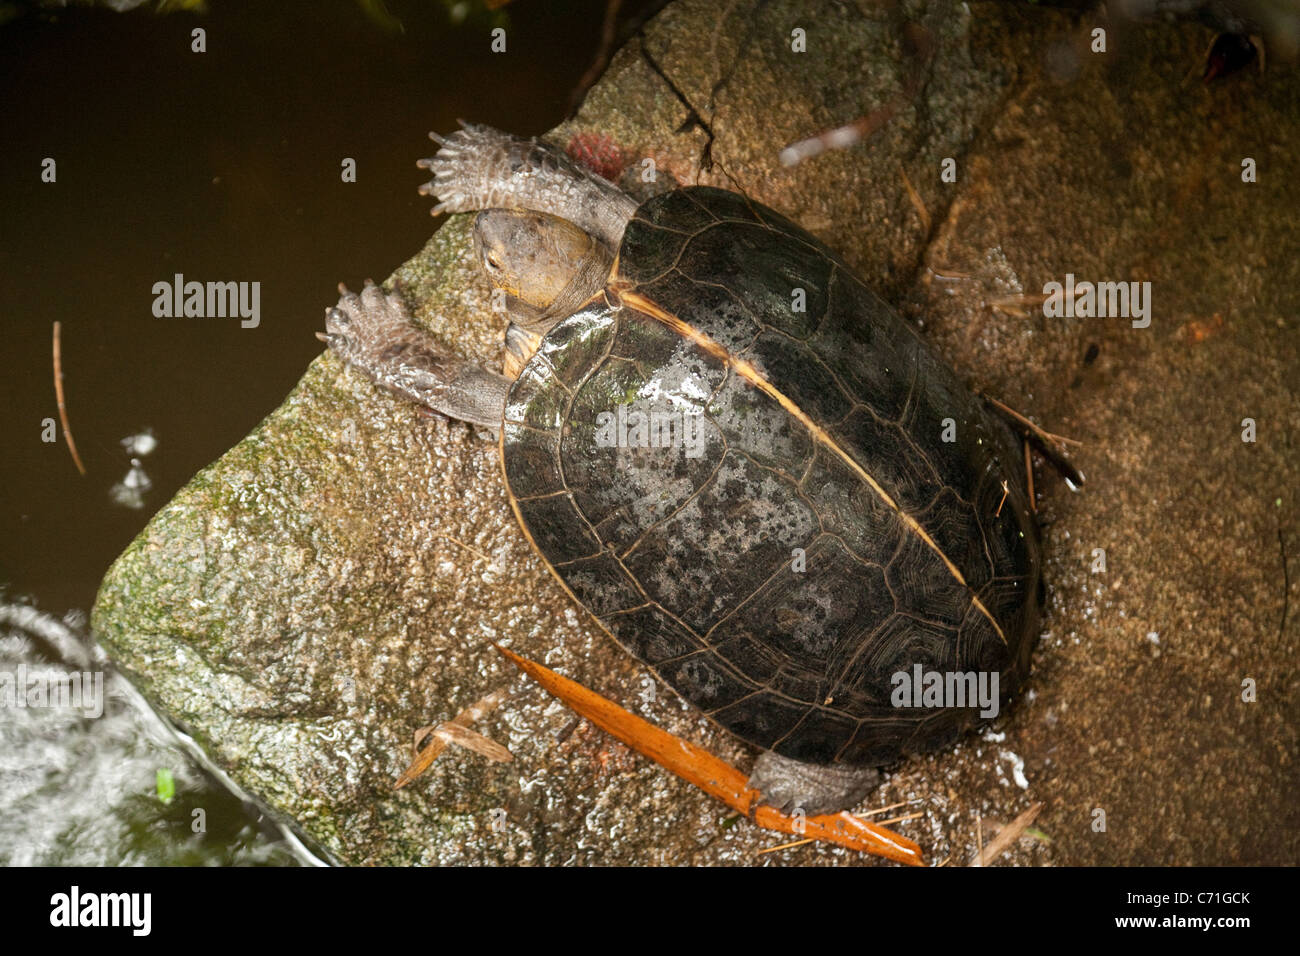 Giant Asian Pond Turtle (Heosemys grandis), Singapore Zoo, Asia Stock Photo